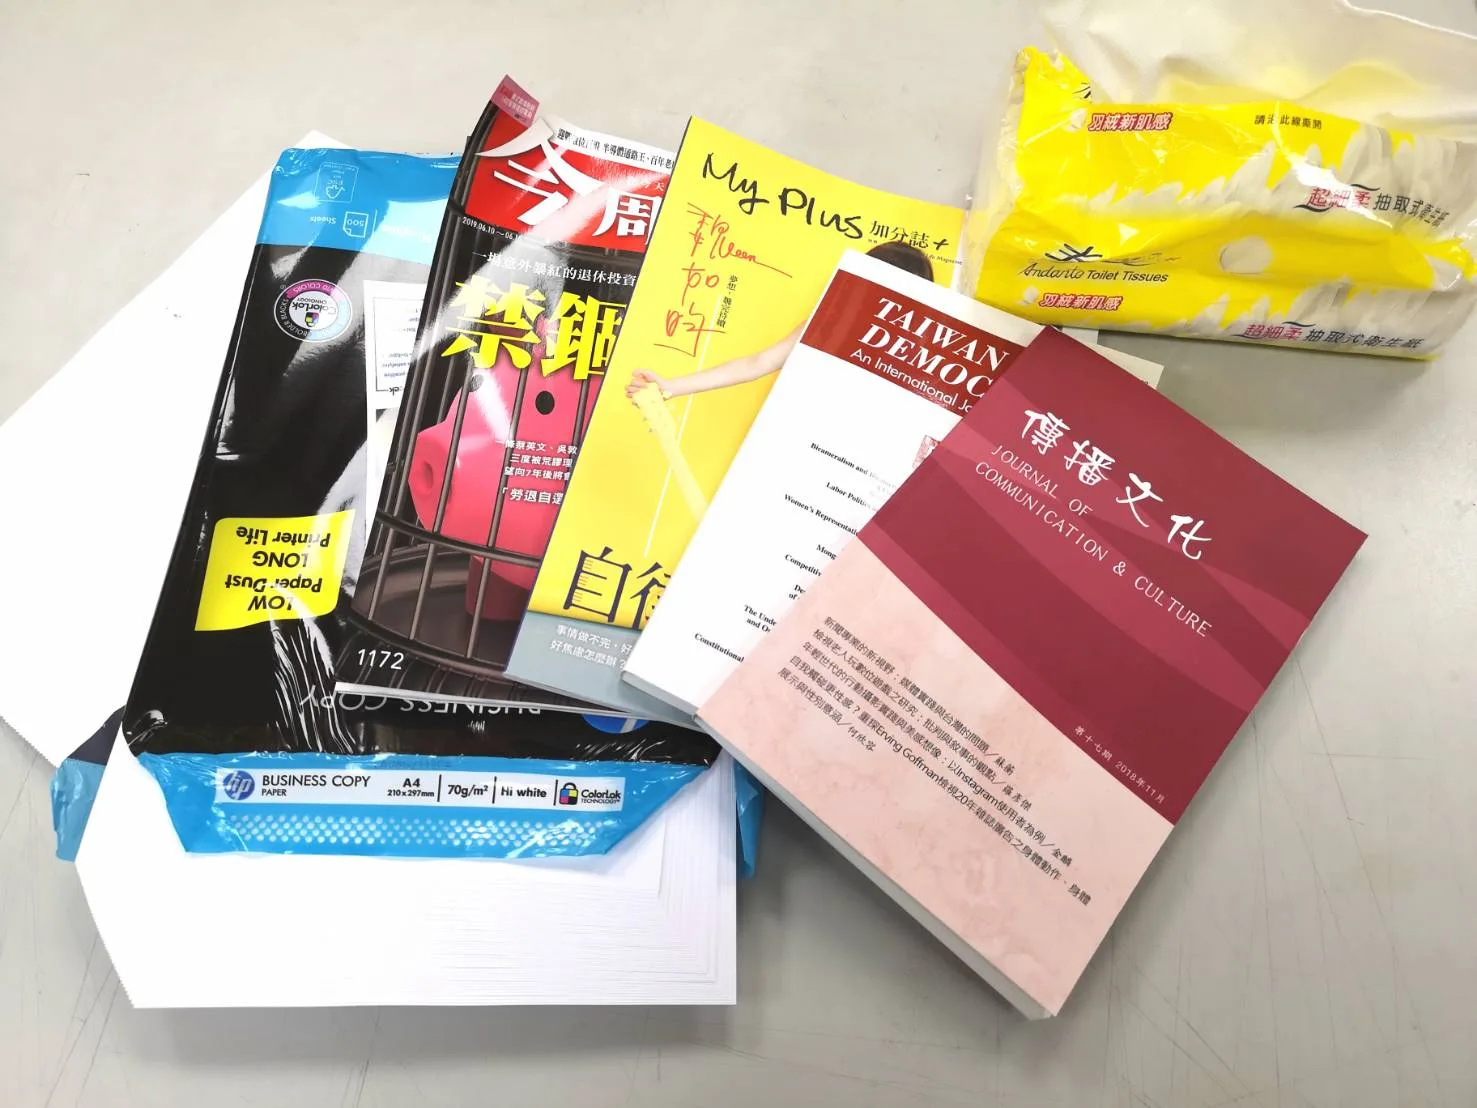 台灣再生紙使用率低 破除迷思為首要